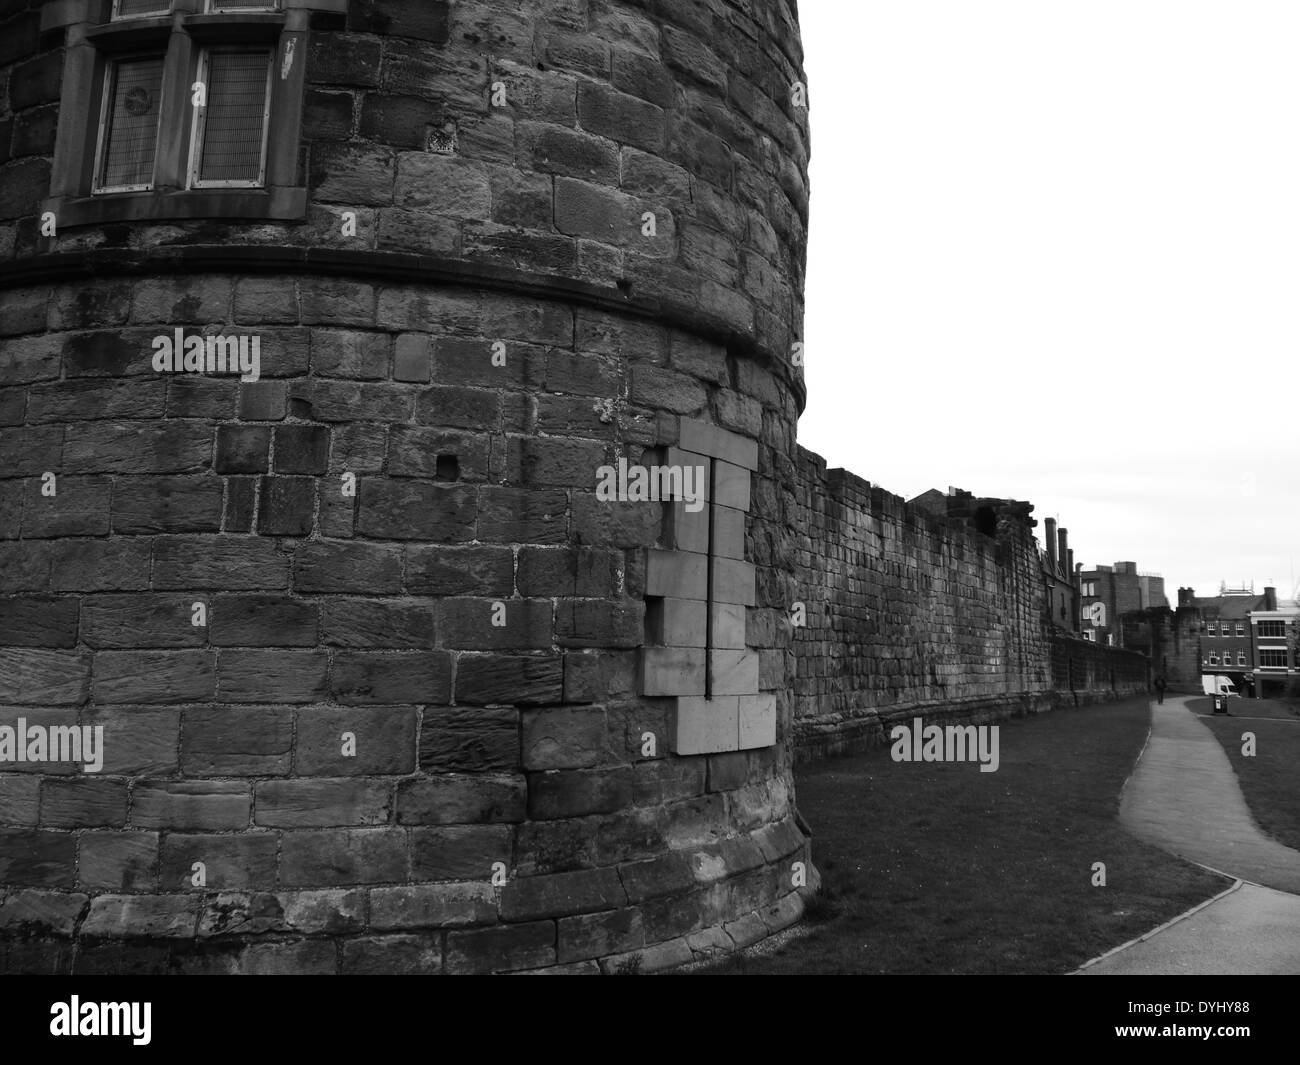 Vista parziale di Morden Tower impostato nella storica città medievale a parete, Newcastle upon Tyne, England, Regno Unito Foto Stock